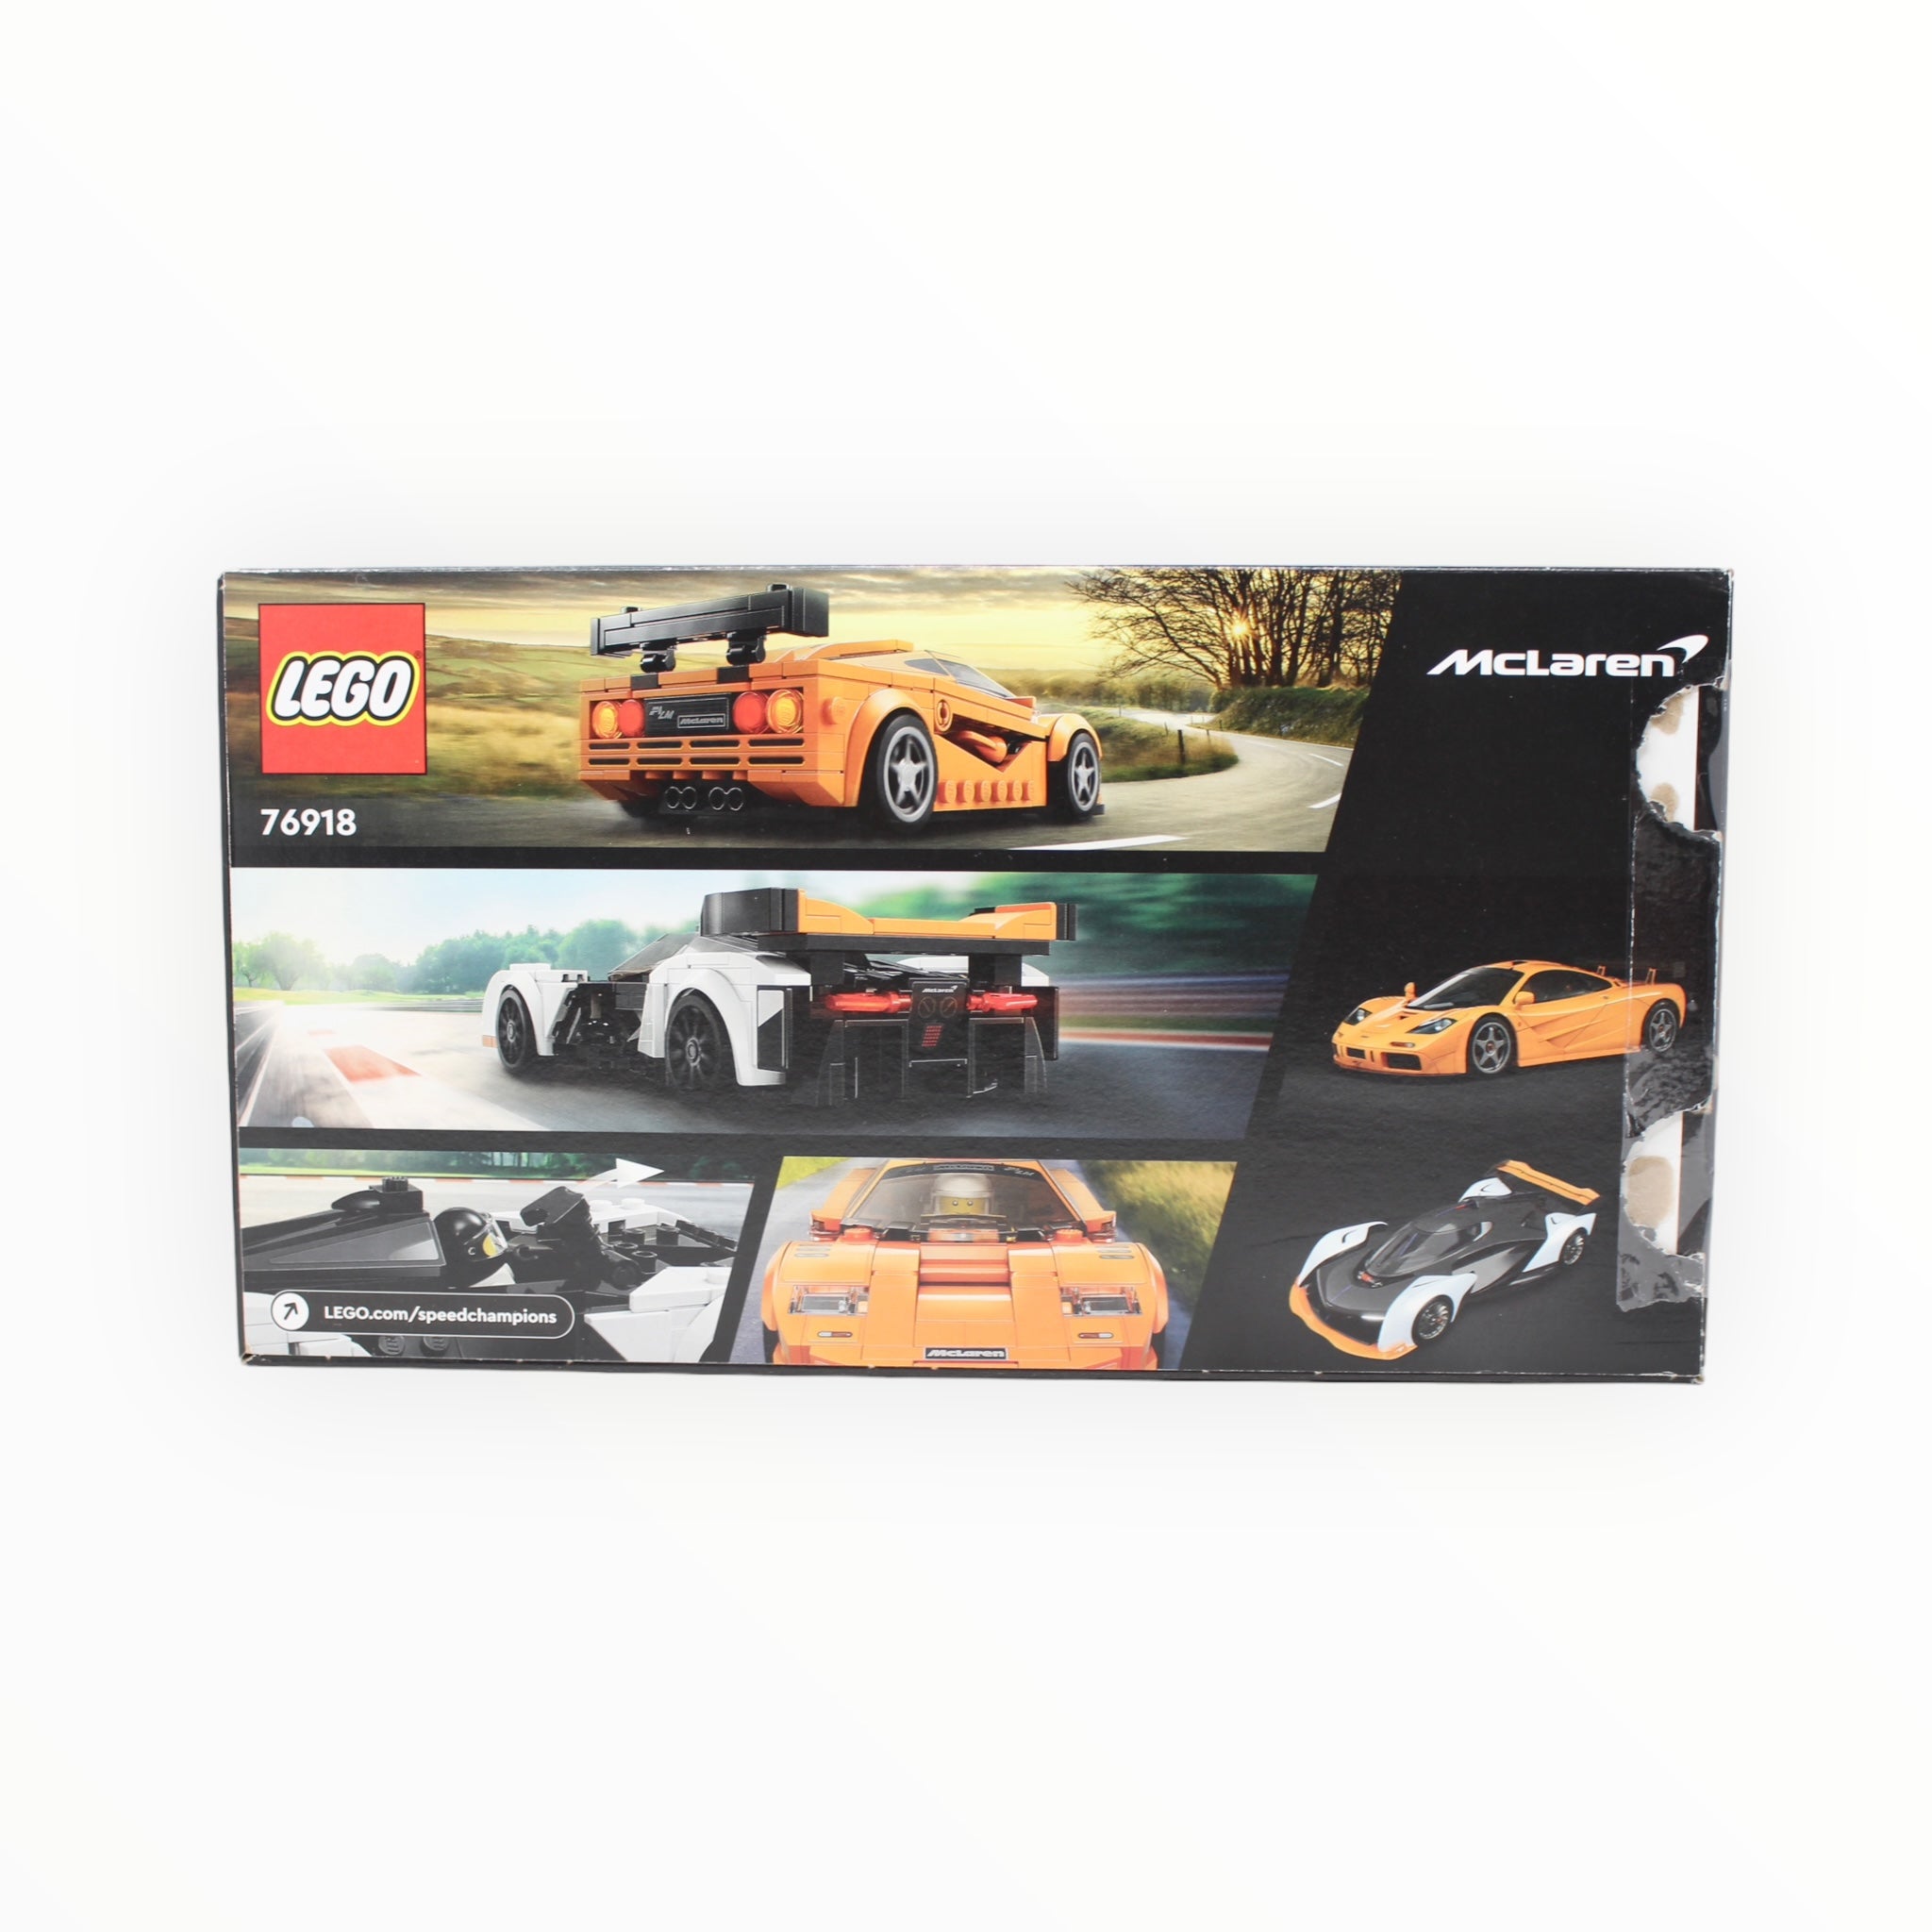 Certified Used Set 76918 Speed Champions McLaren Solus GT & McLaren F1 LM